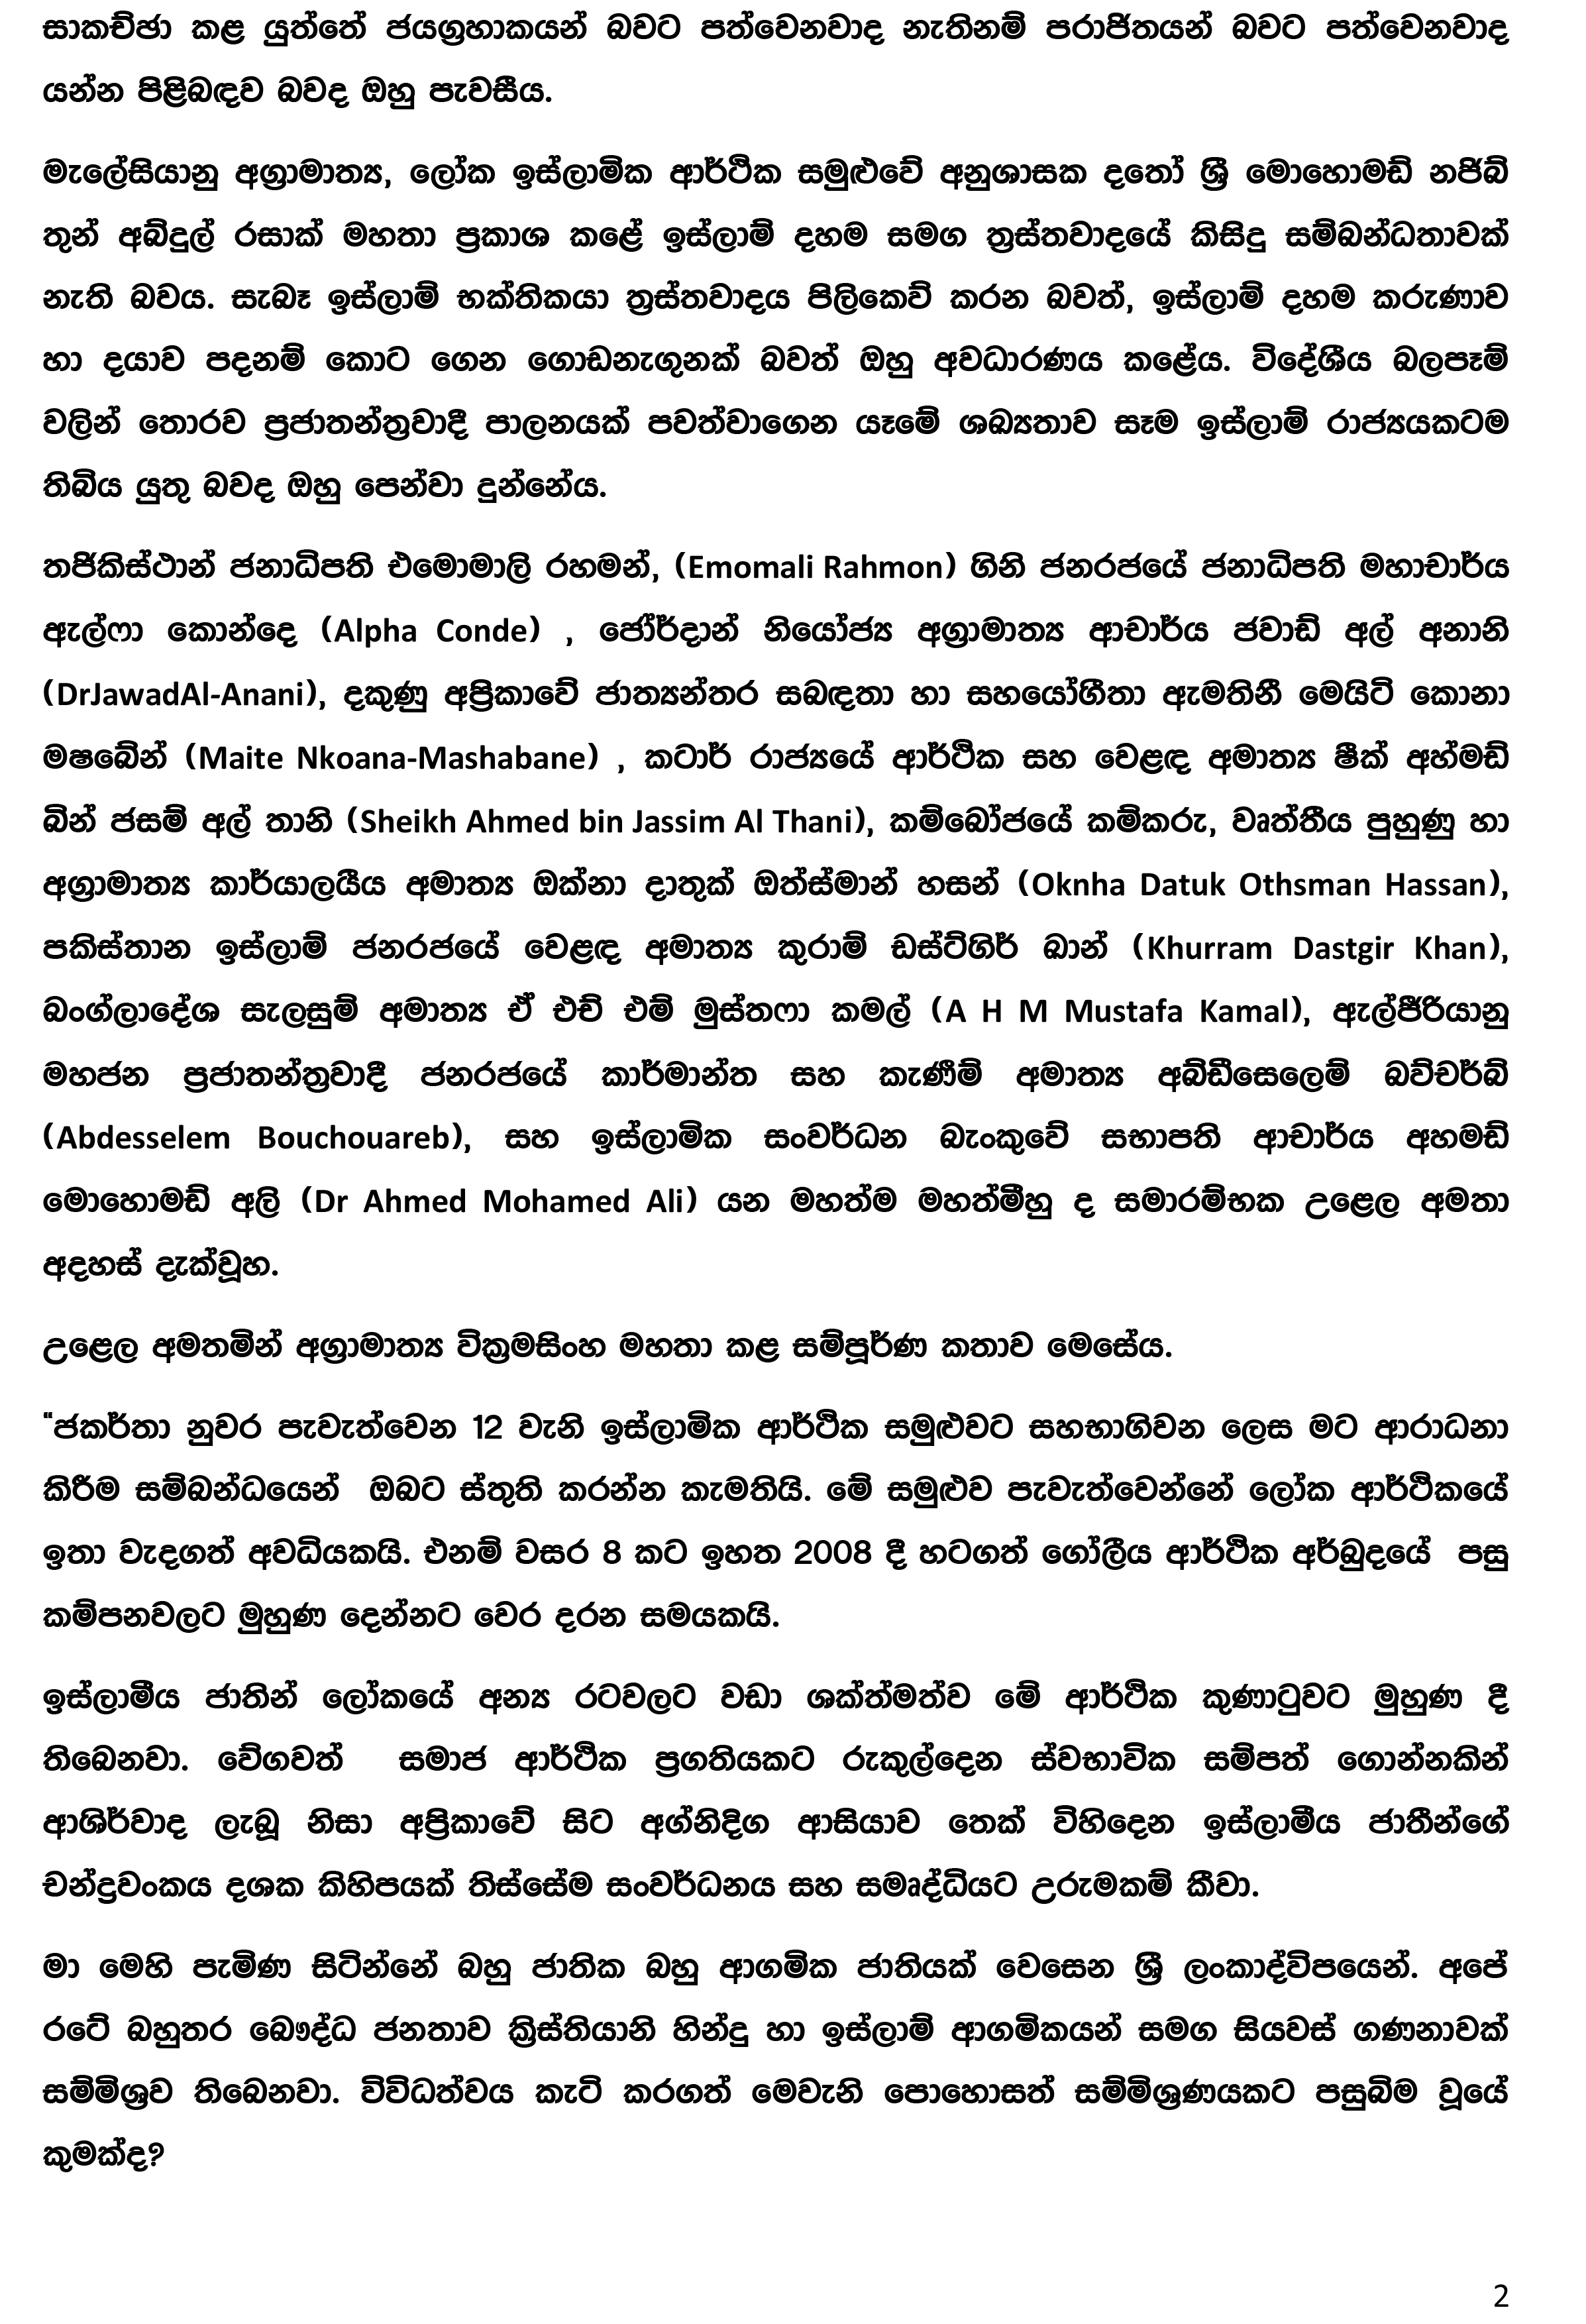 Press Release (1) - August 02_2016 (Sinhala)-2